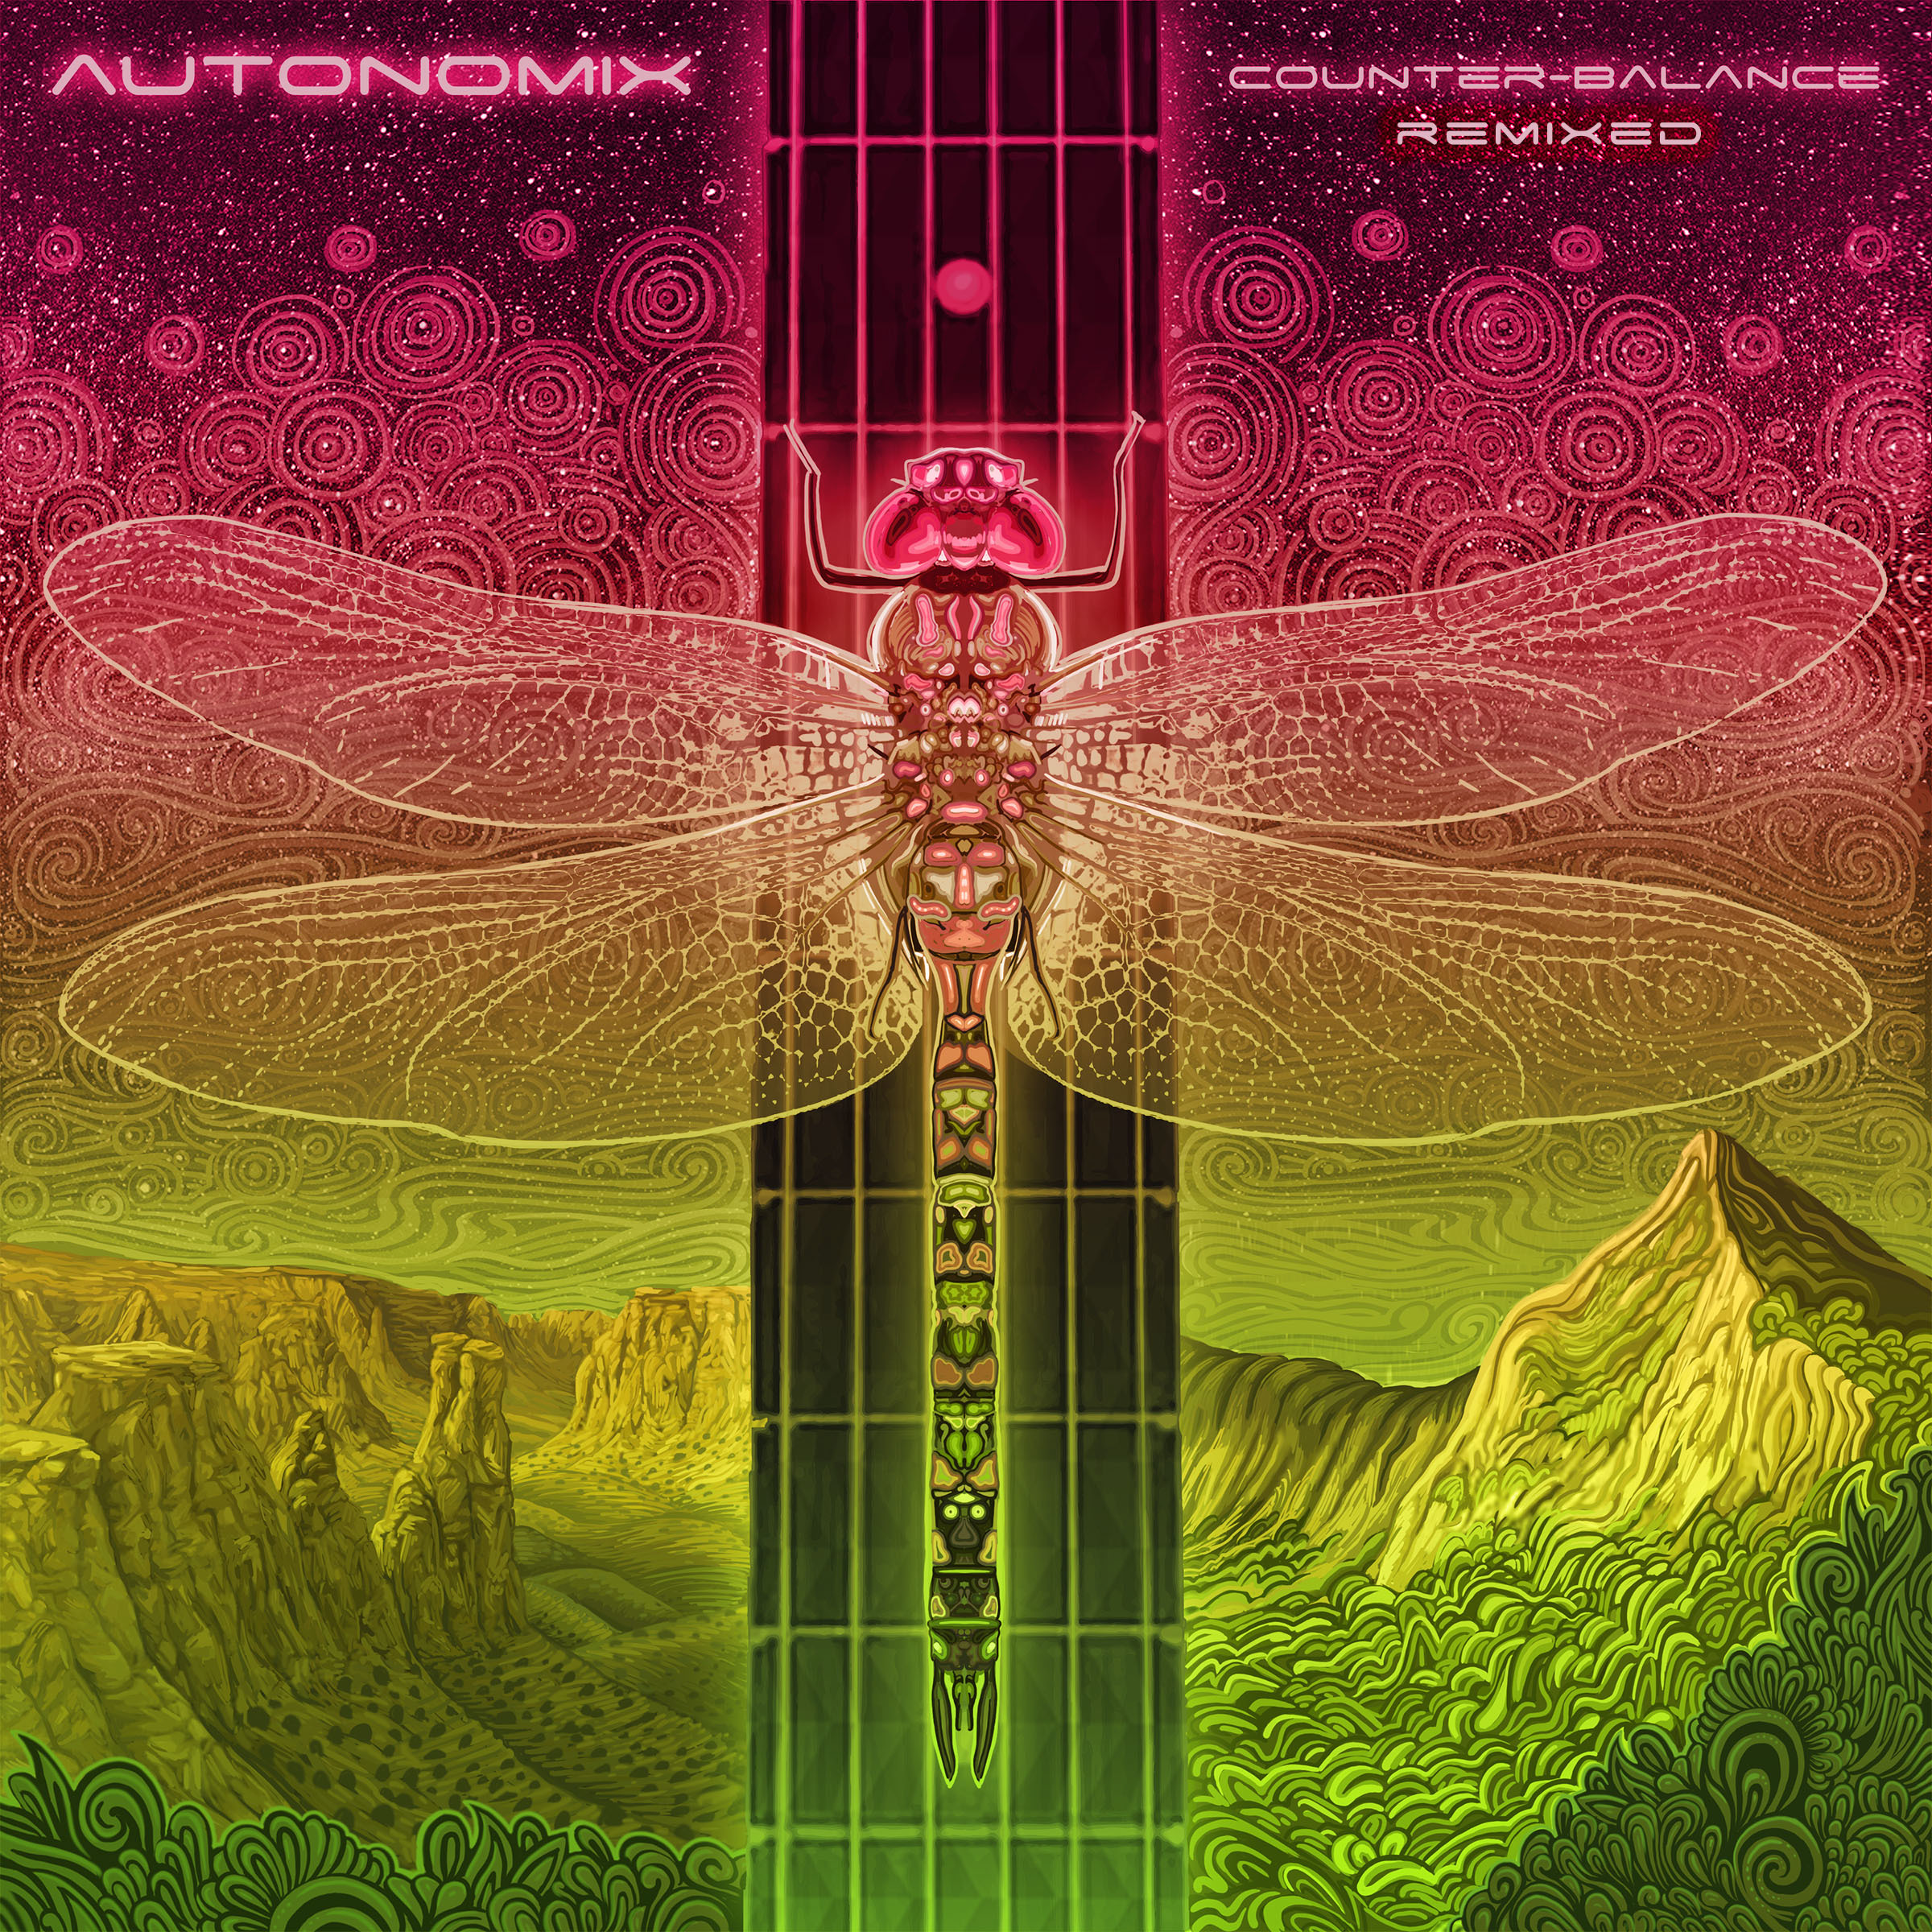 Autonomix announces new lineup, future plans, and new remix